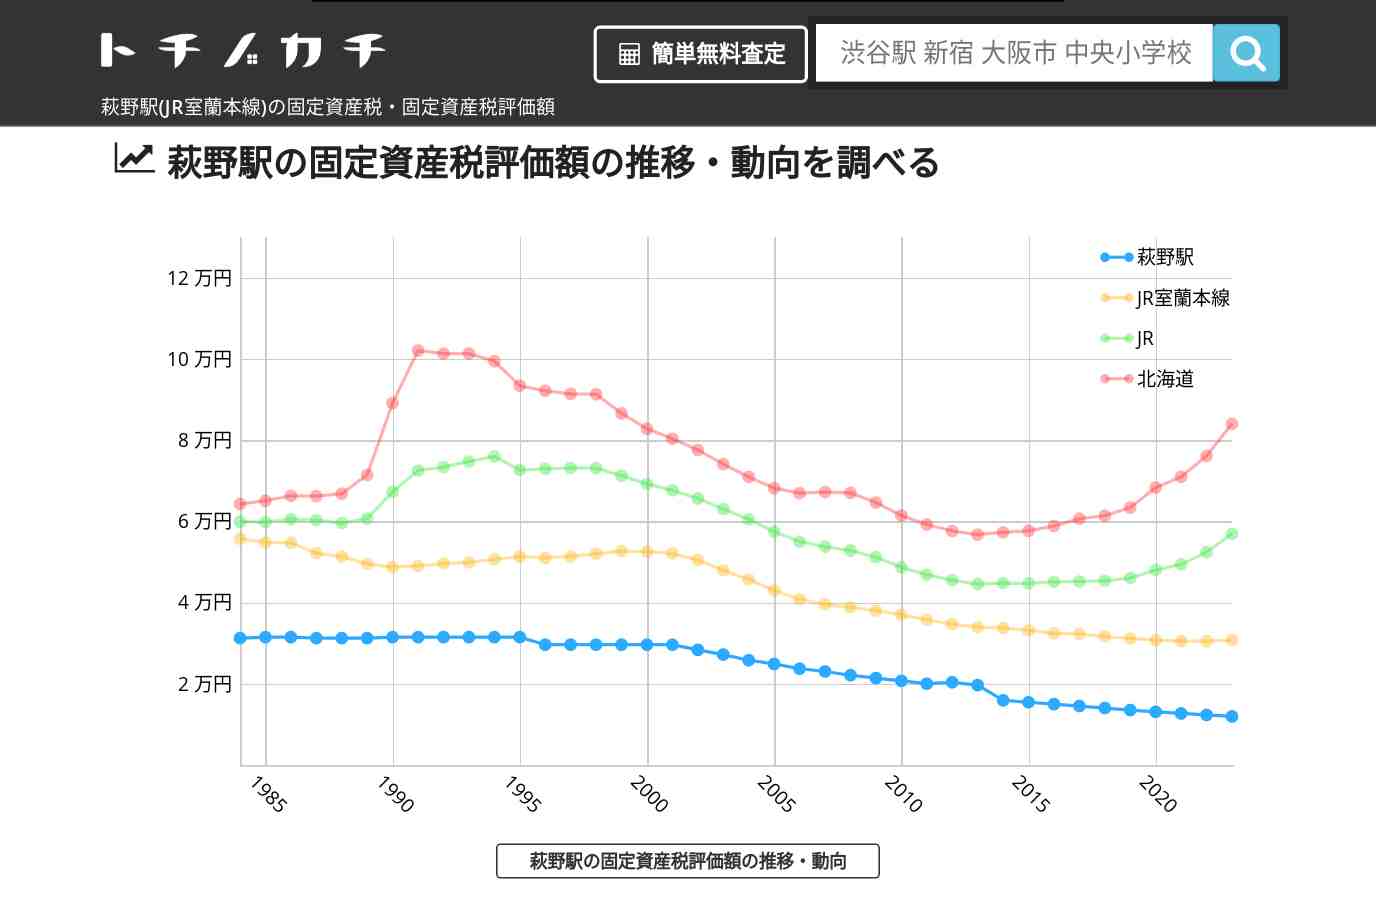 萩野駅(JR室蘭本線)の固定資産税・固定資産税評価額 | トチノカチ